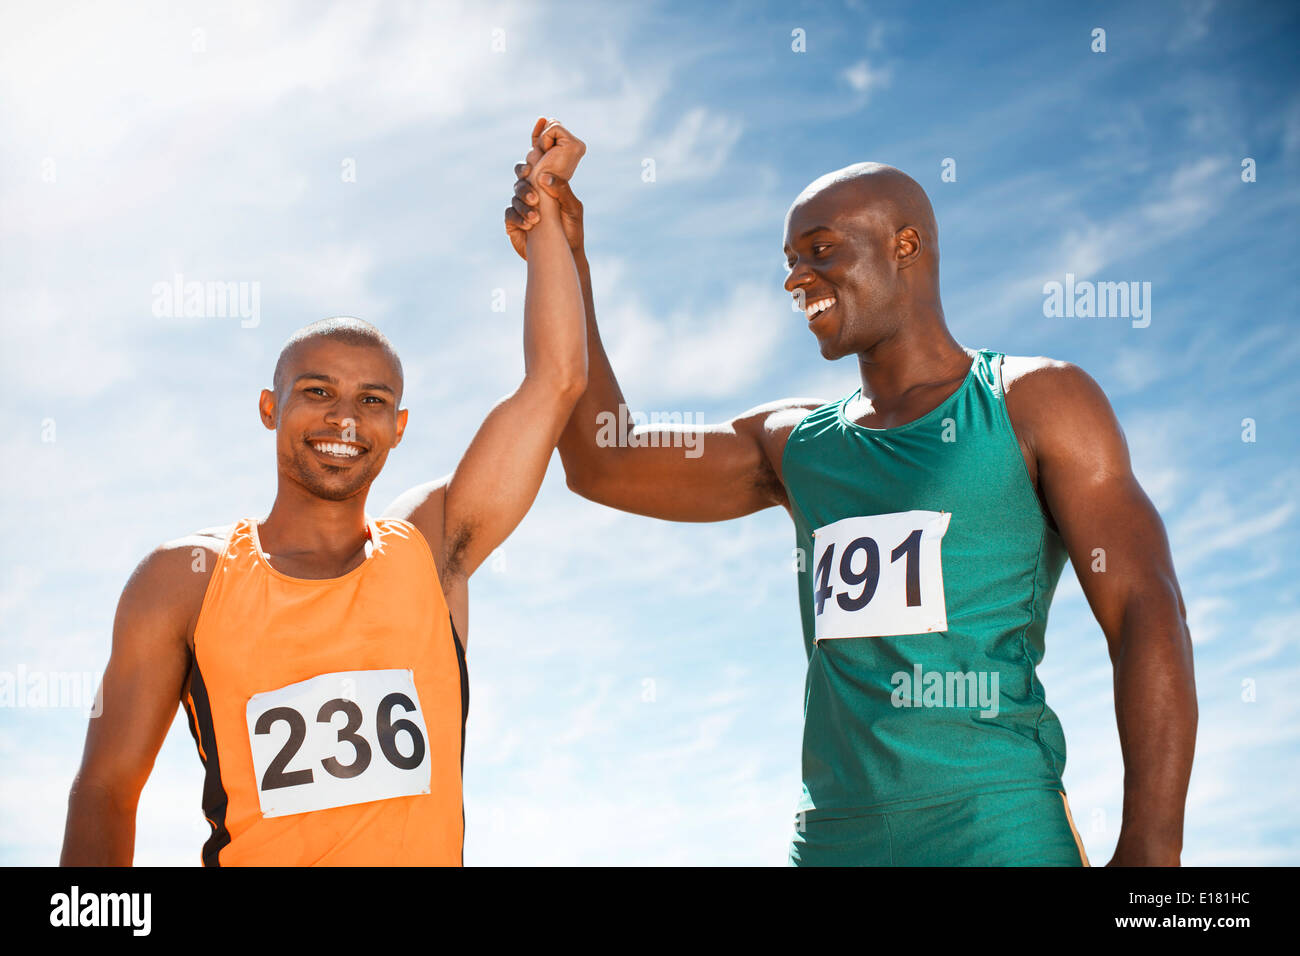 Athletes celebrating together on track Stock Photo